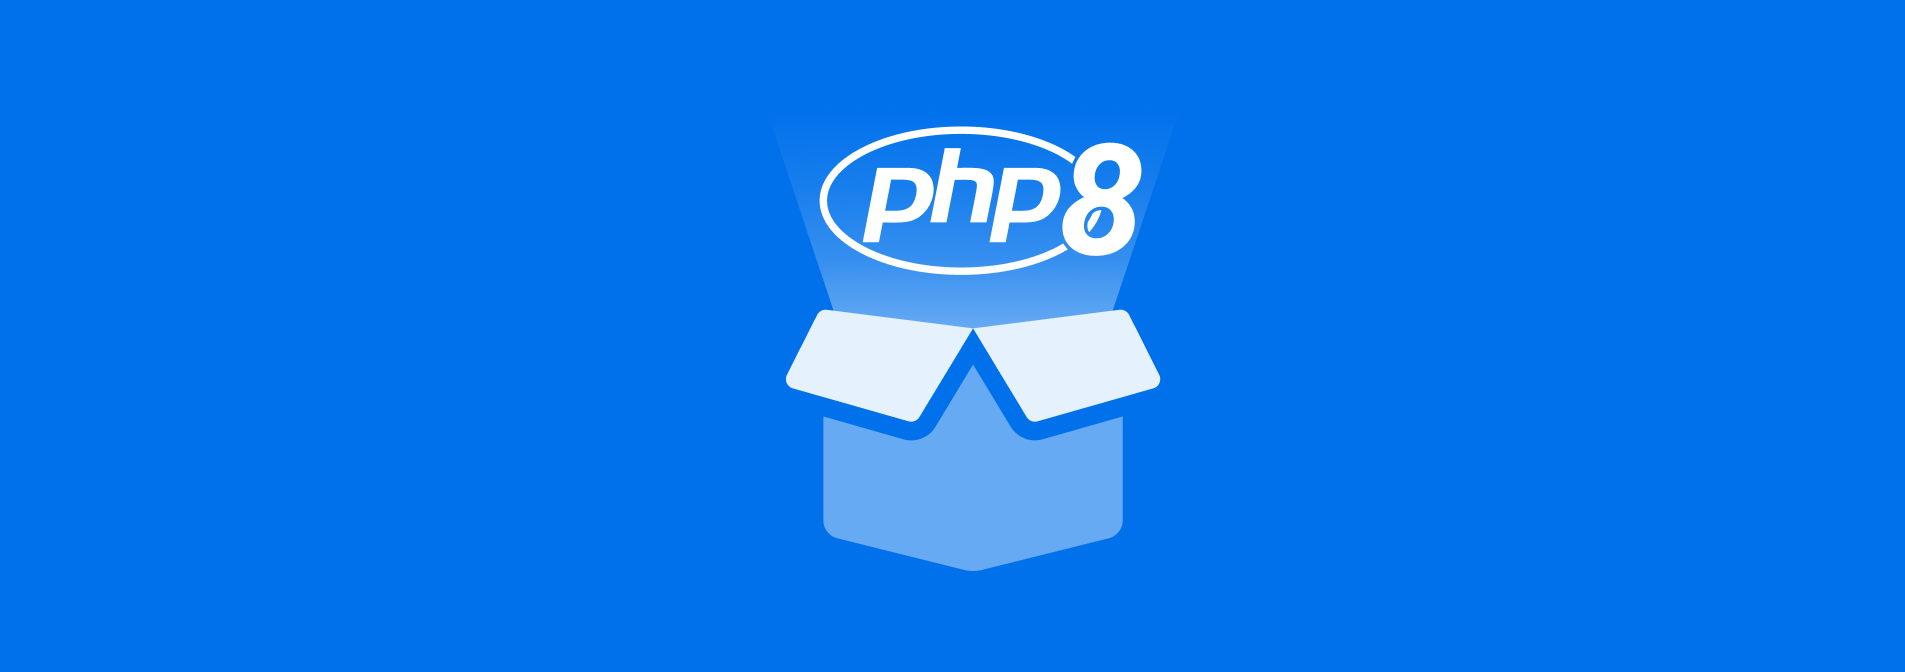 PHP 8 jetzt bei hosting.de verfügbar